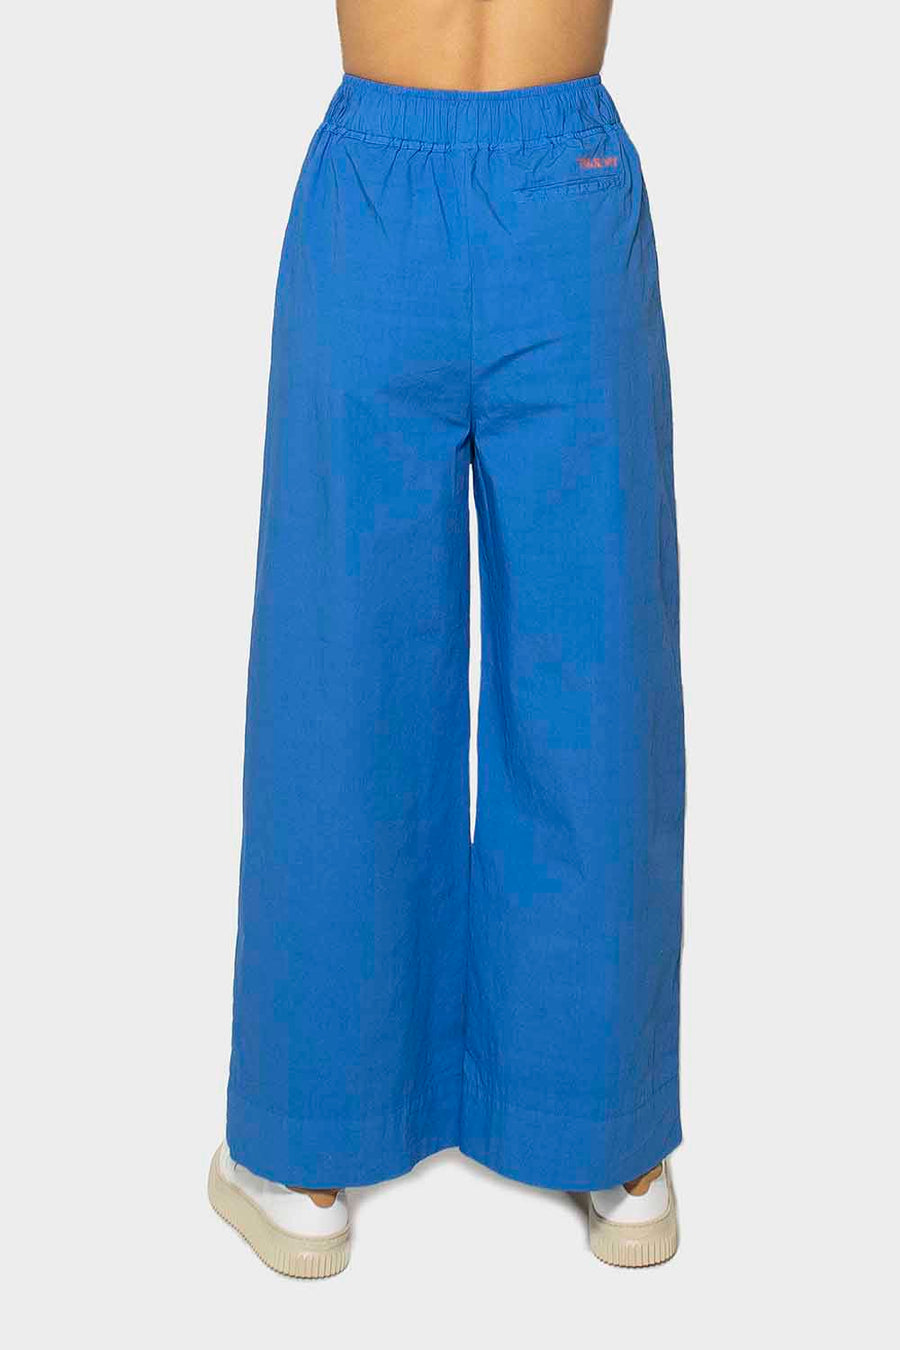 Pantalone True Nyc da donna in cotone blu